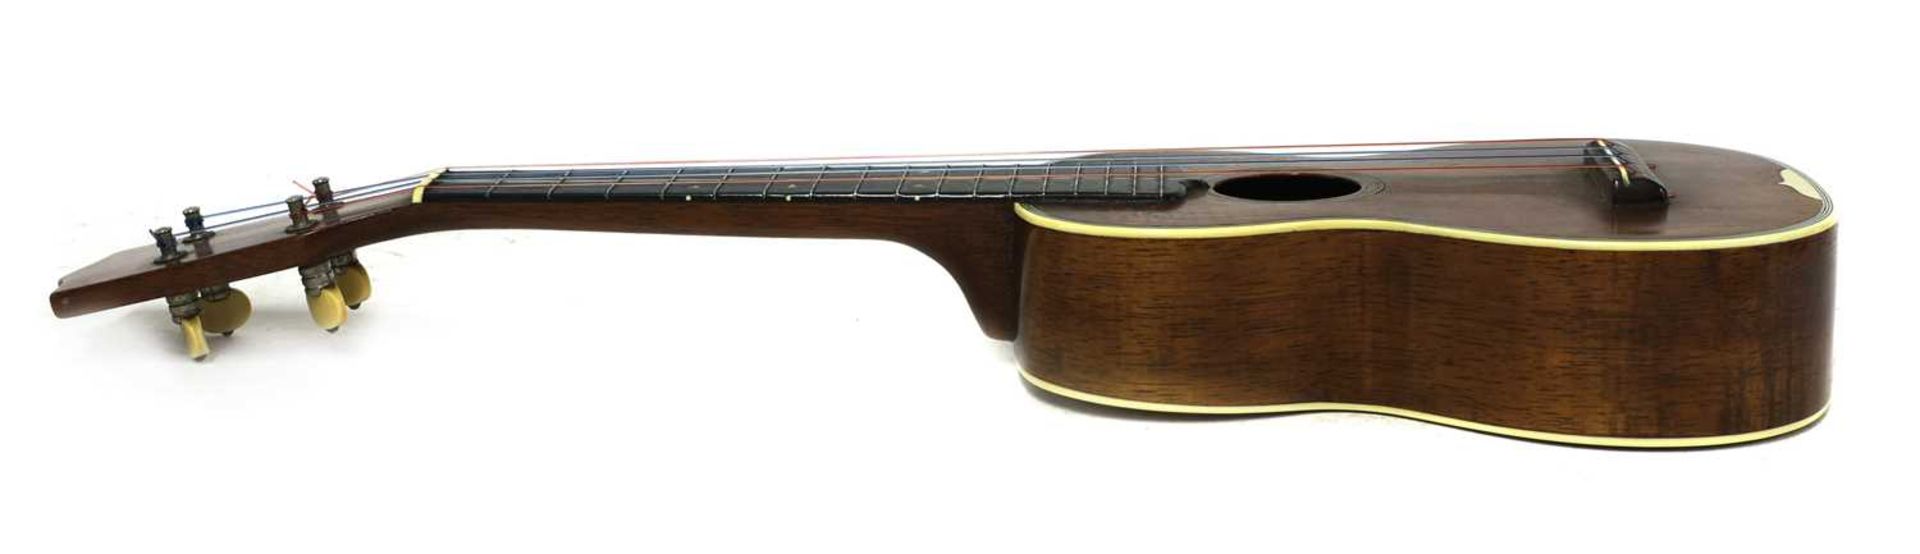 A Martin & Co. Style 3 ukulele, - Image 2 of 8